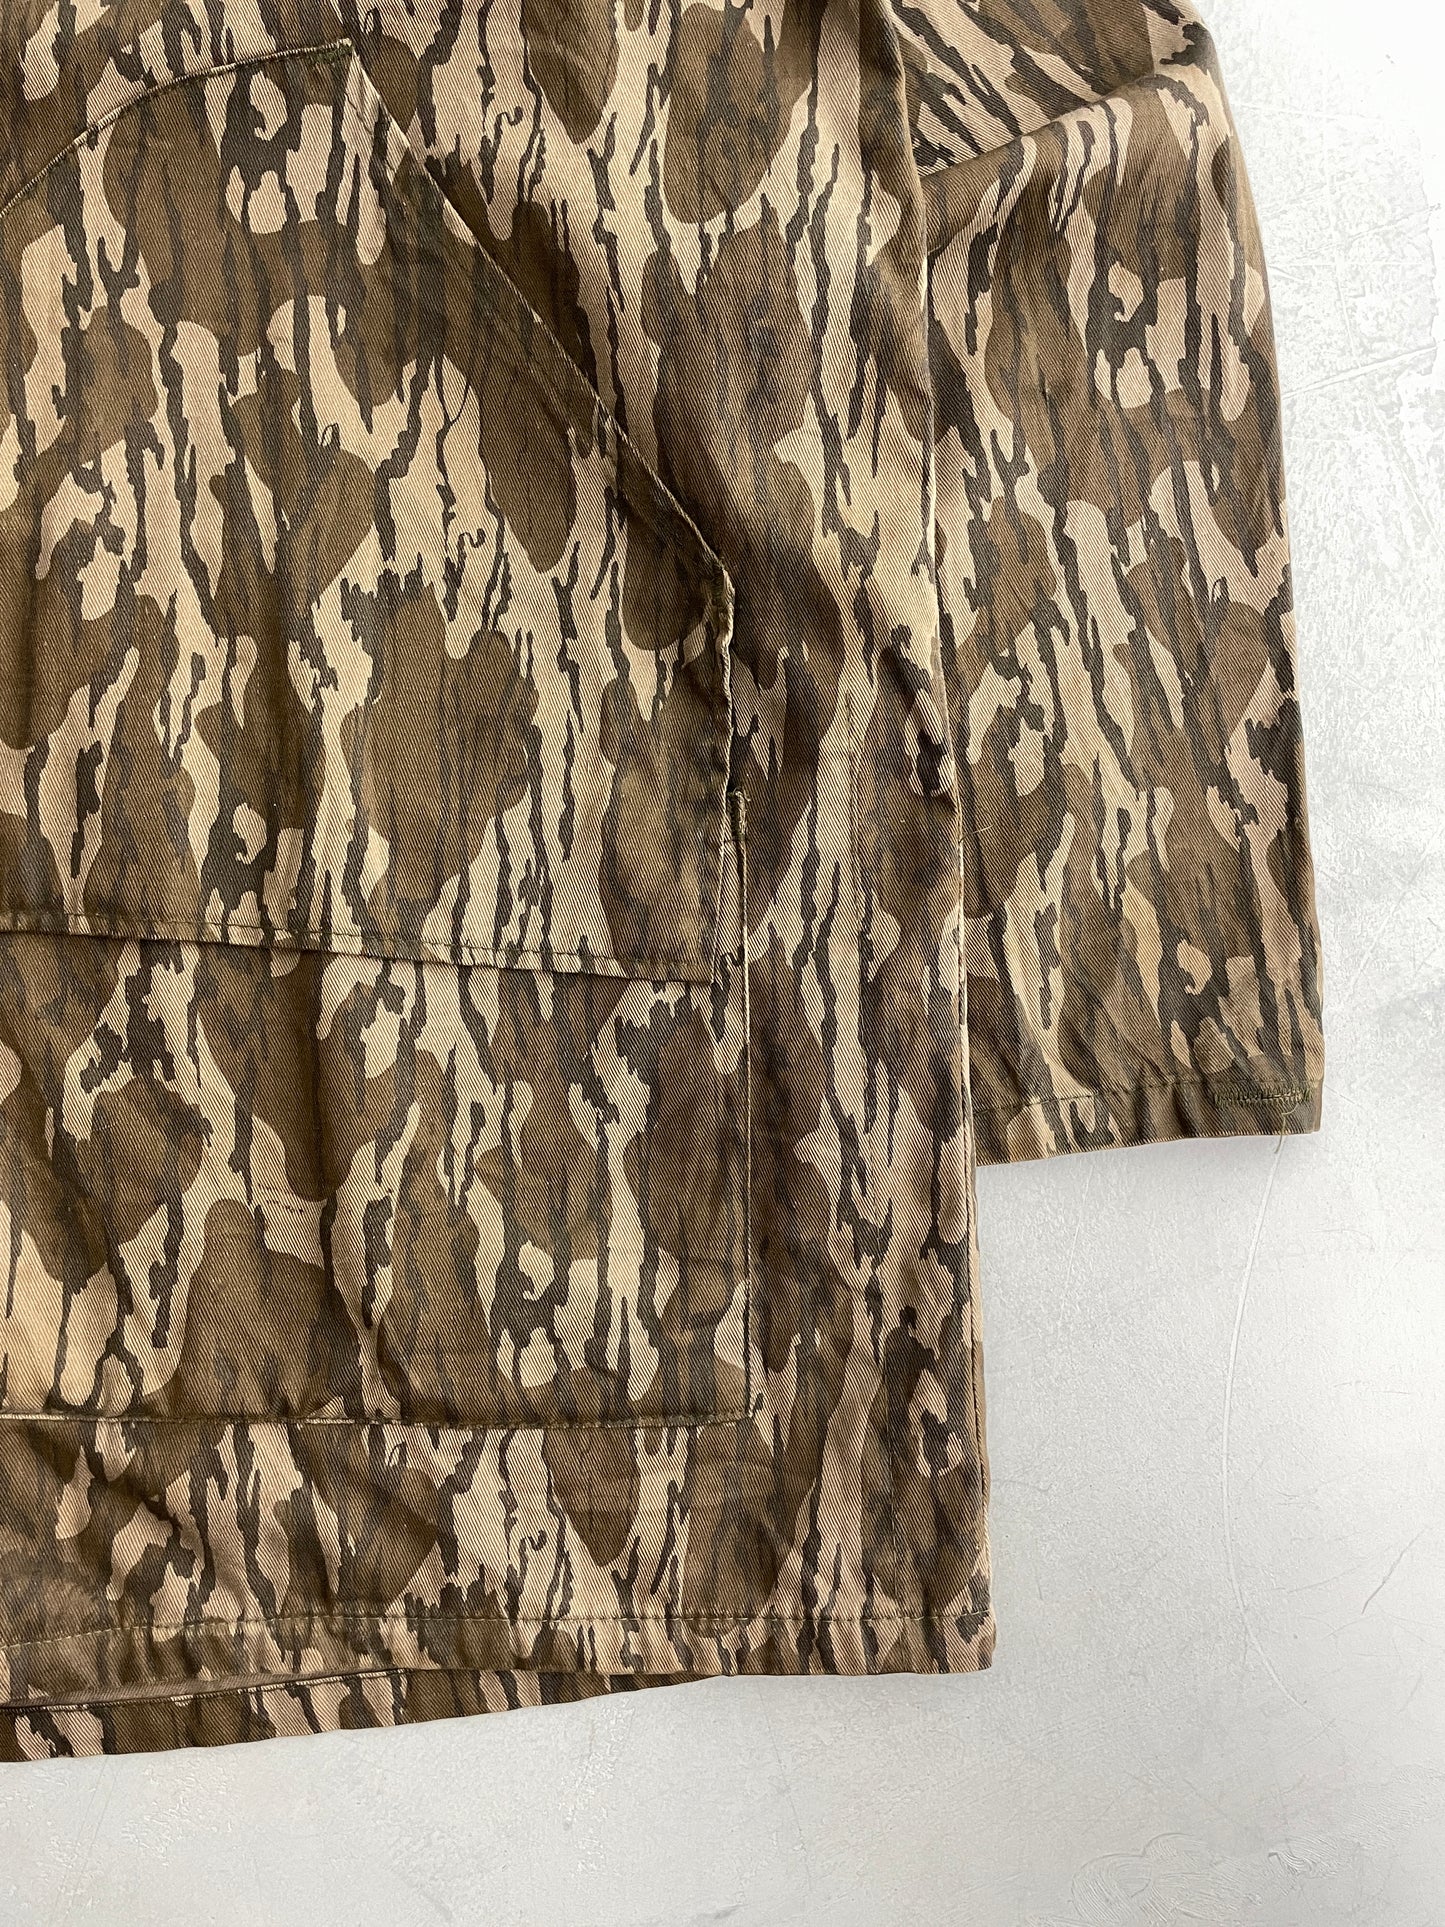 Mossy Oak Camo Jacket [L]